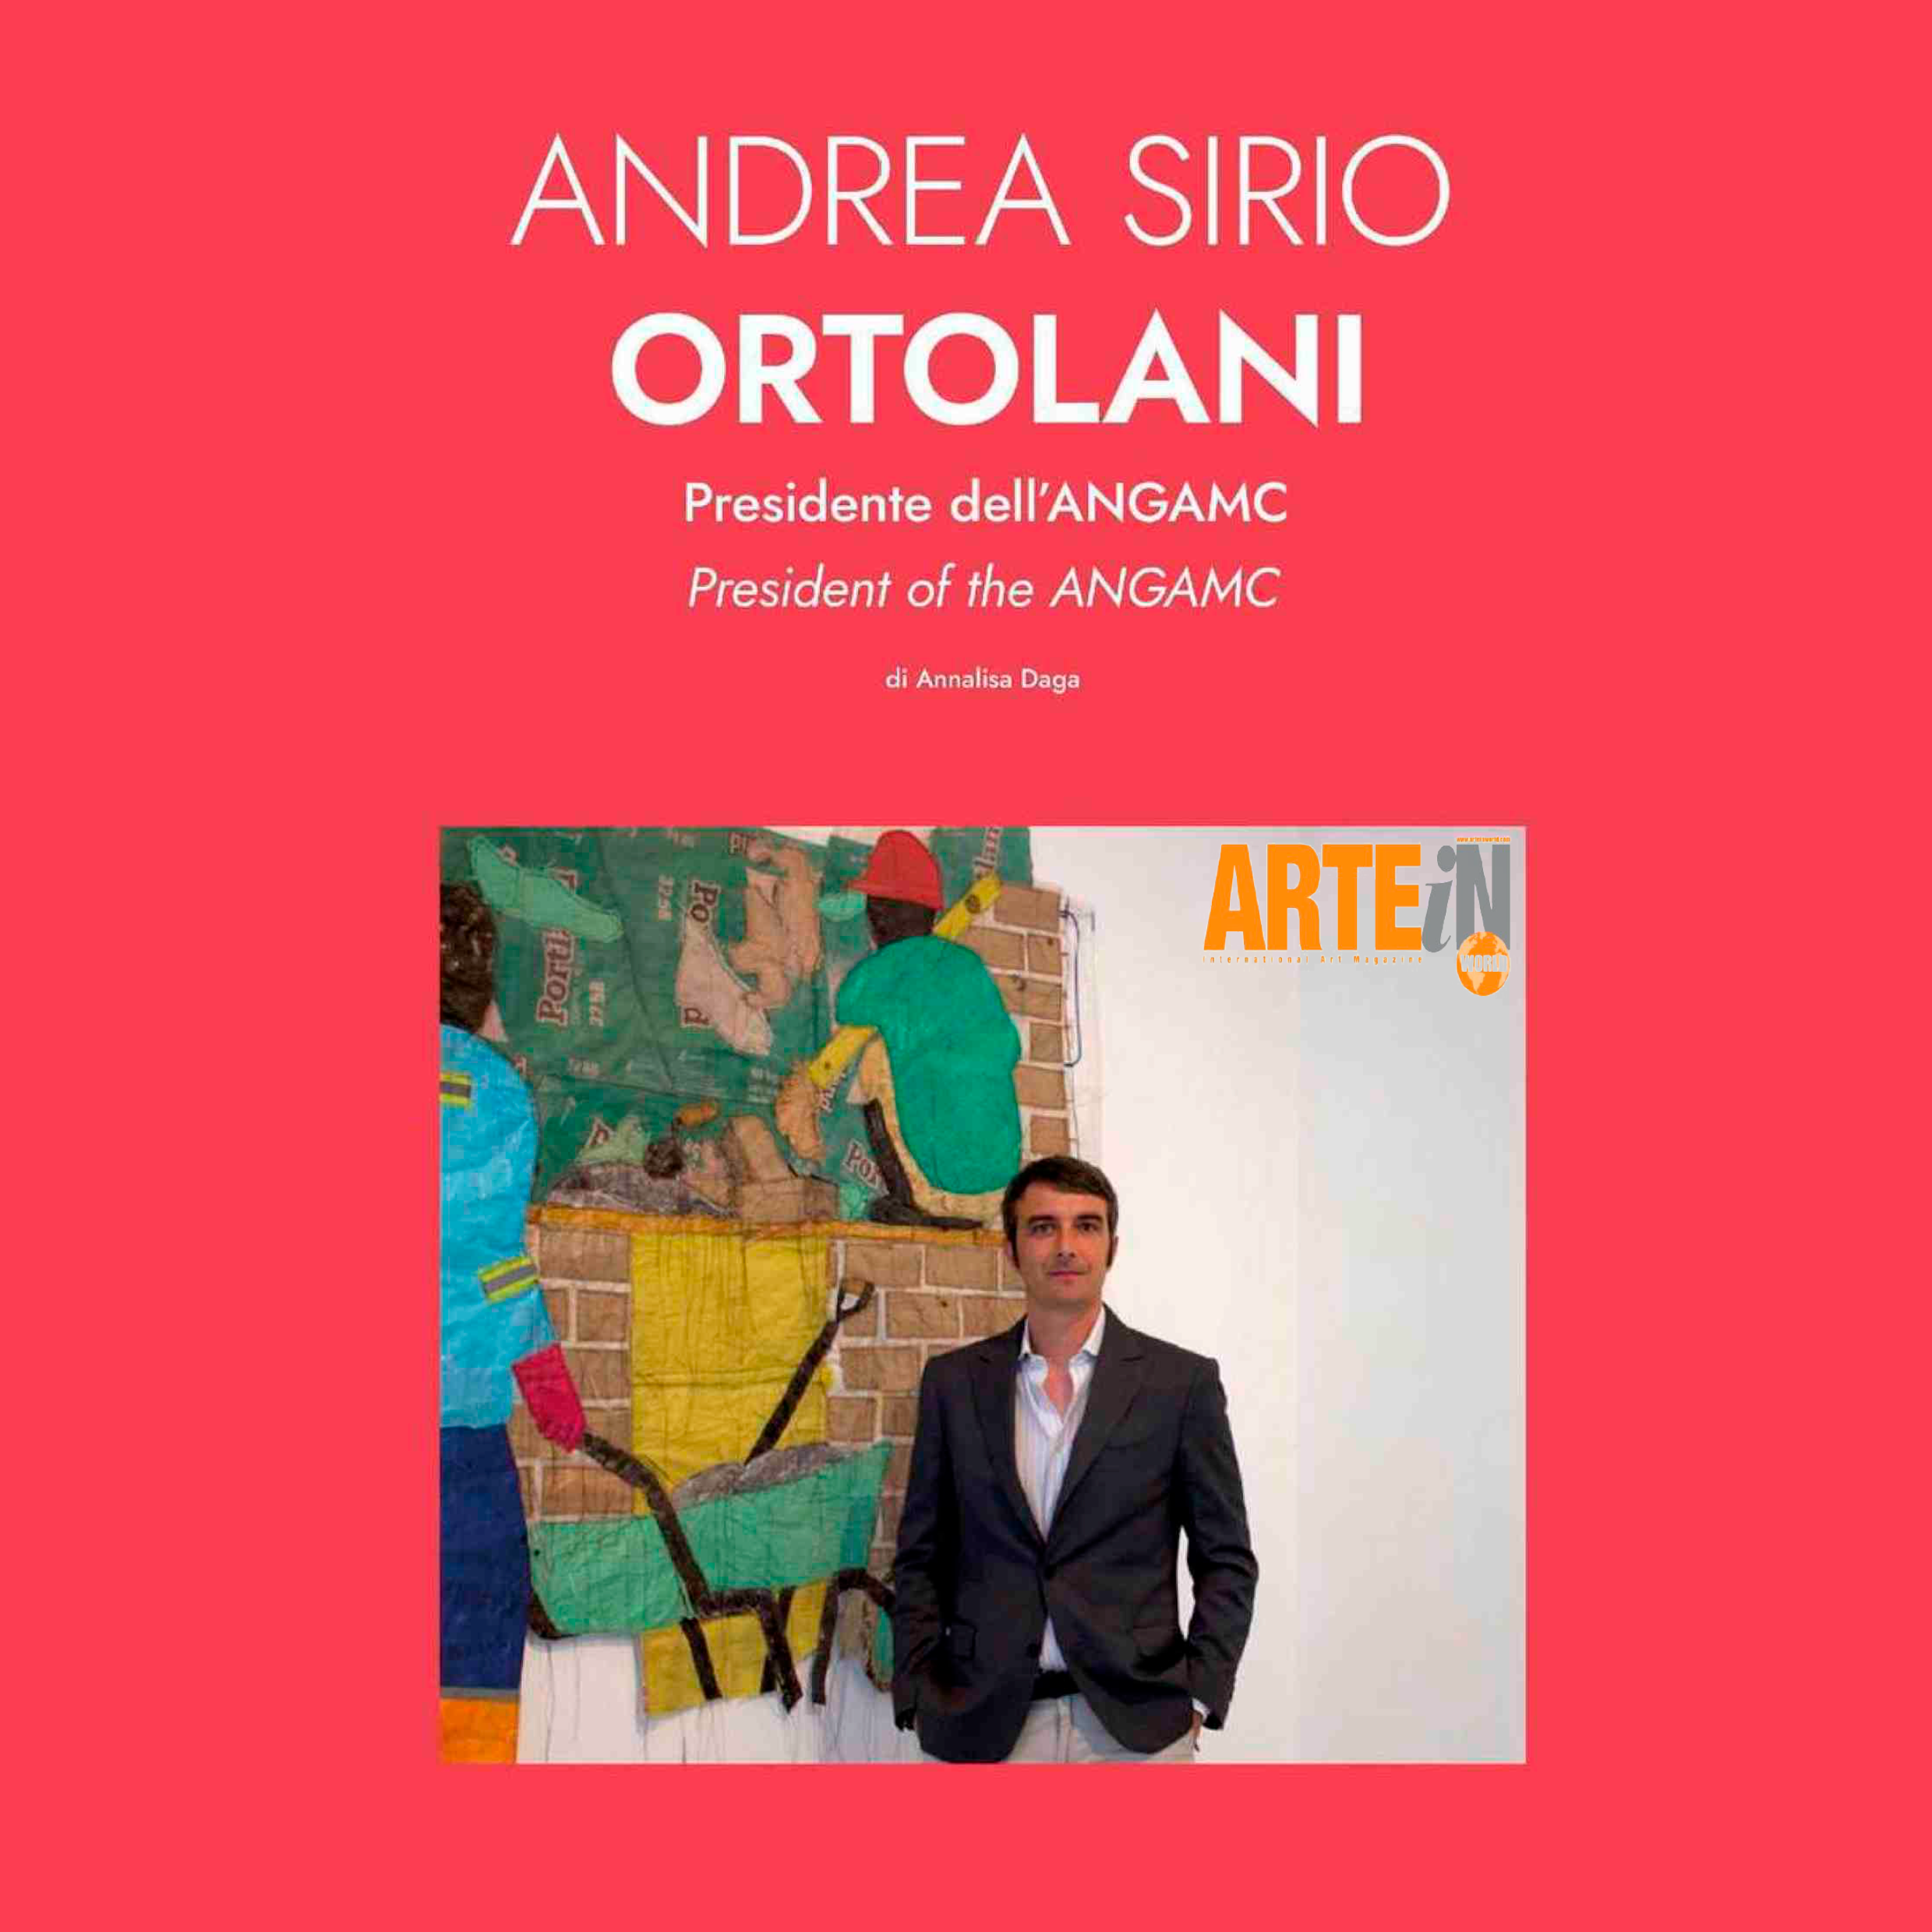 IL PRESIDENTE ANDREA SIRIO ORTOLANI INTERVISTATO DA ARTEIN